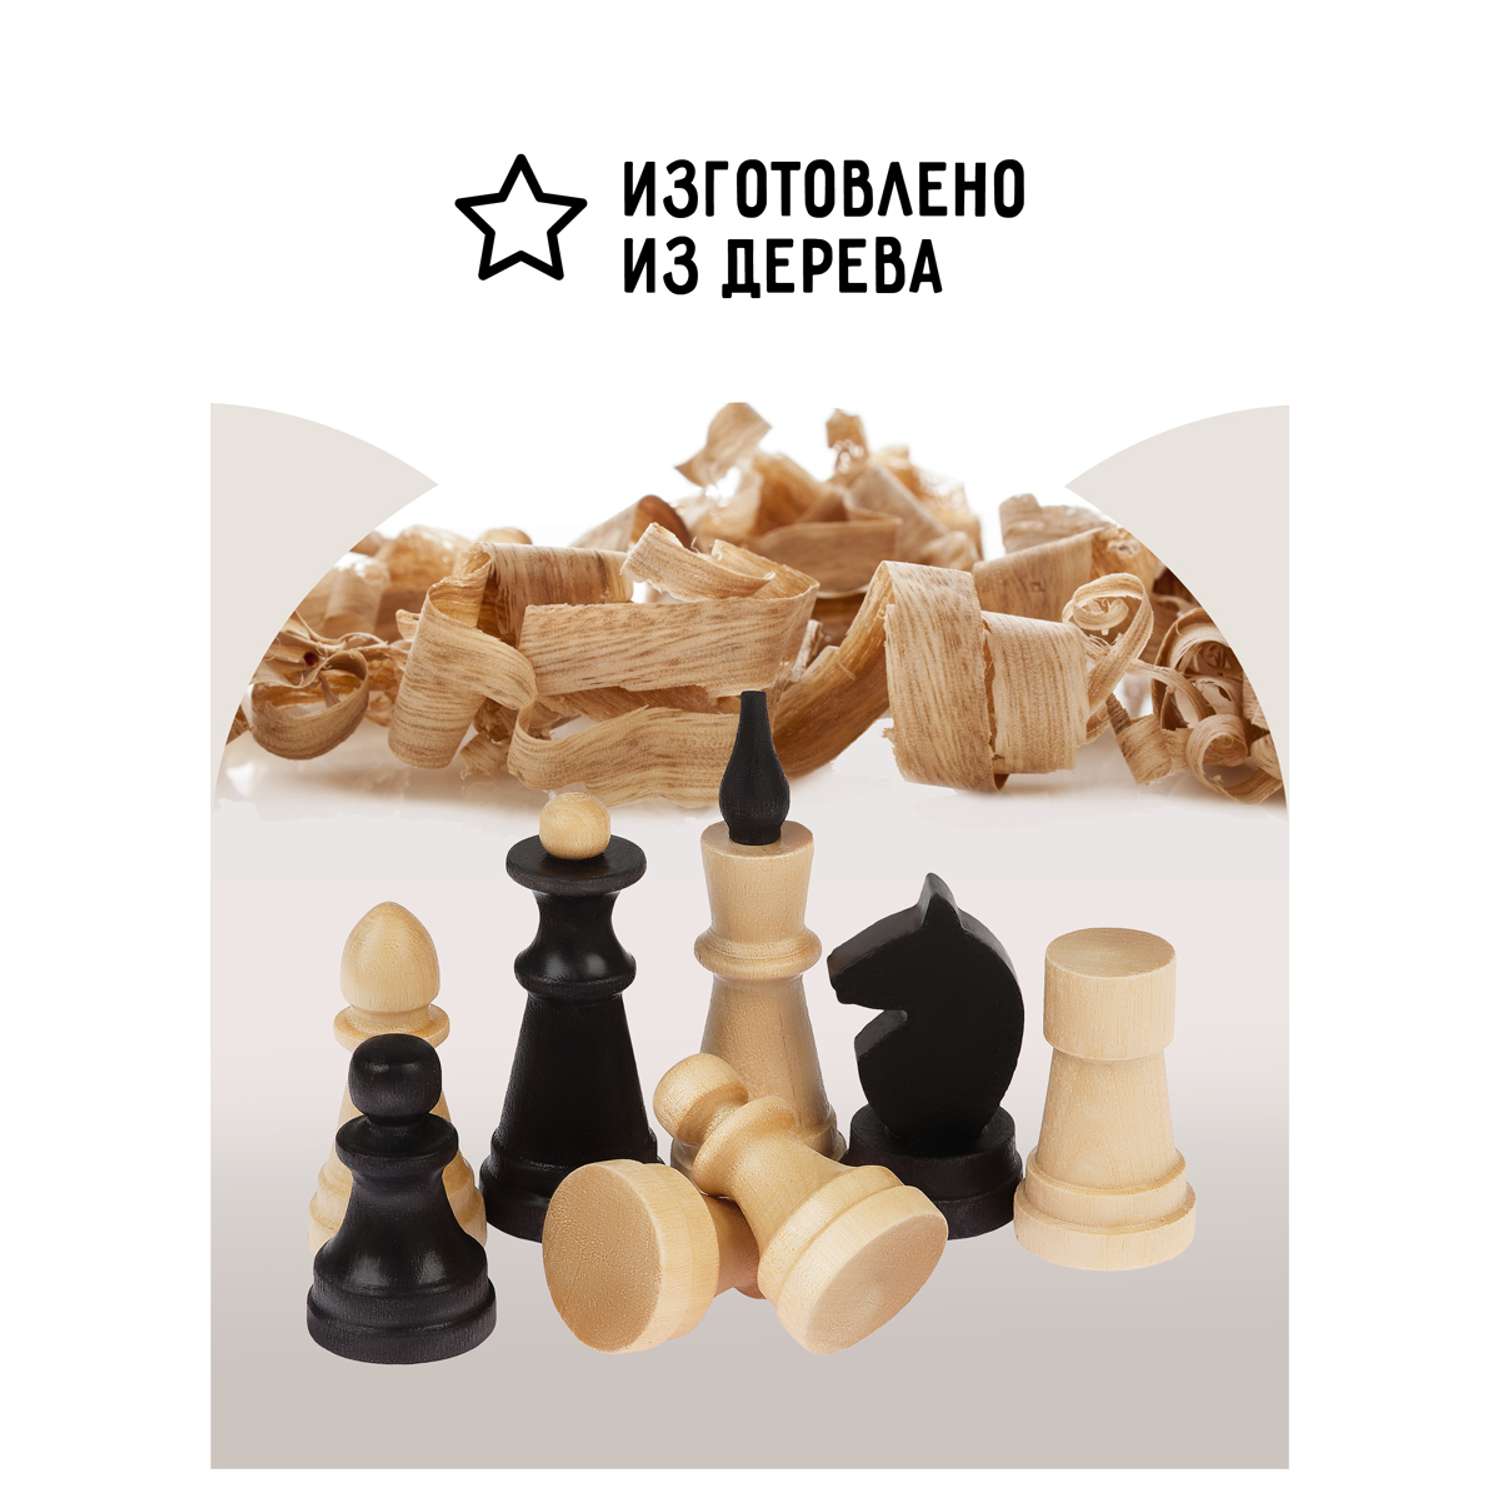 Шахматы ТРИ СОВЫ обиходные деревянные с деревянной доской 29*29см - фото 4